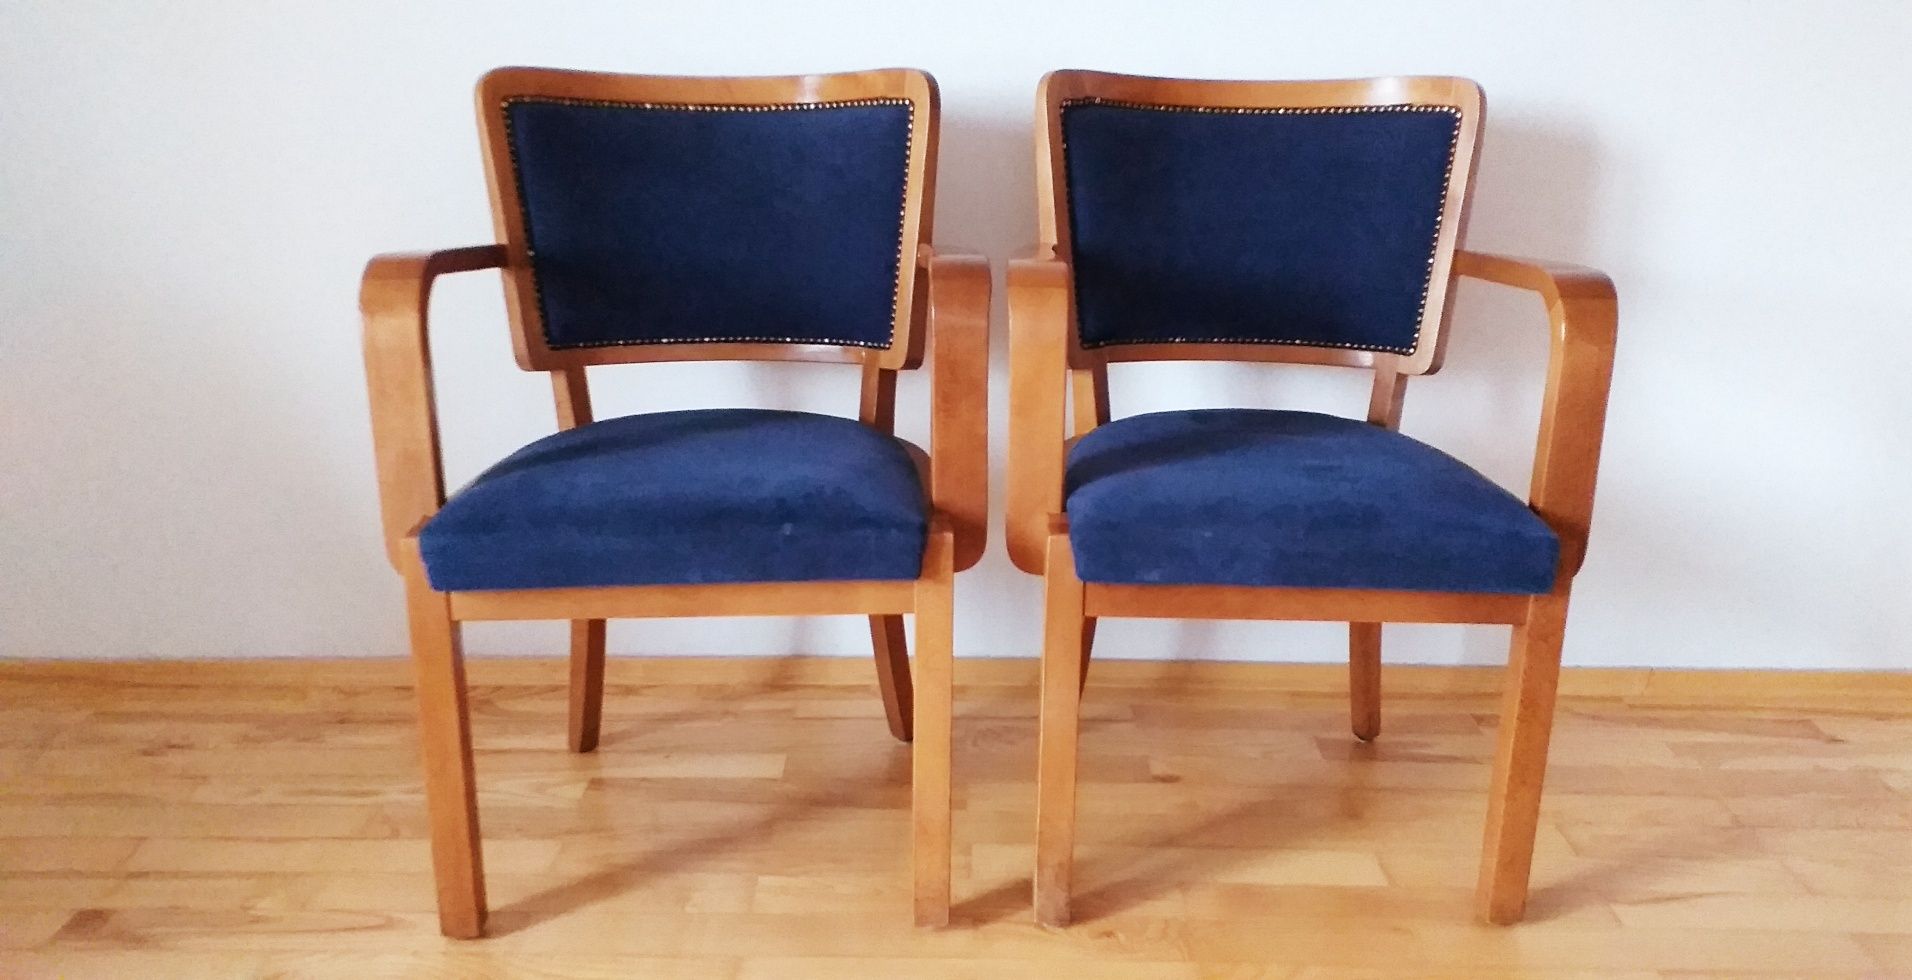 krzesło gabinetowe krzesło vintage krzesło retro krzesło bukowe